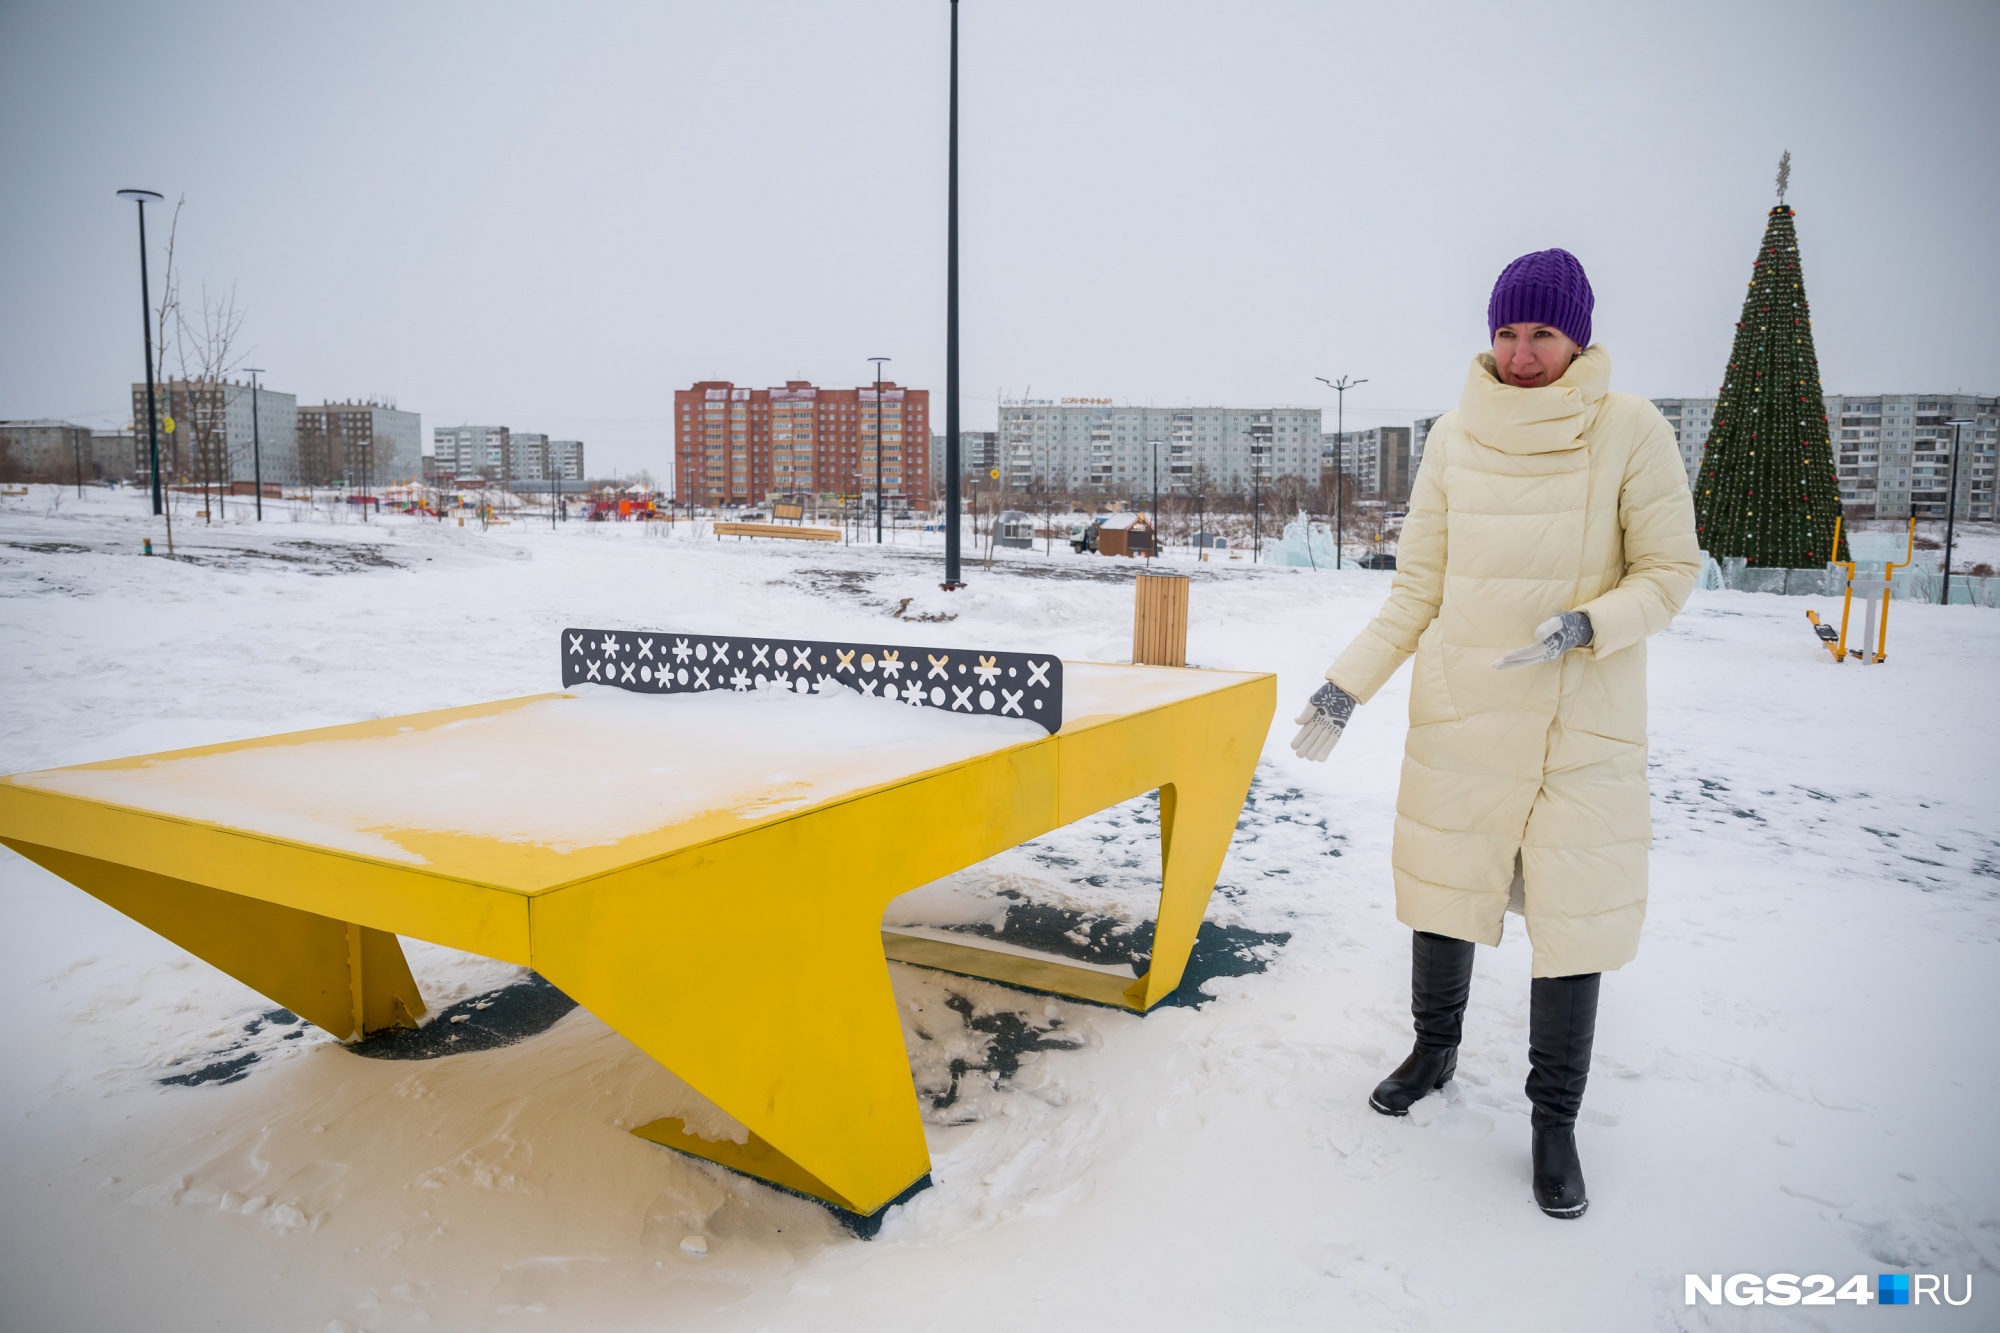 Один из самых дорогих элементов в парке — металлический стол для пинг-понга за 240 тысяч рублей